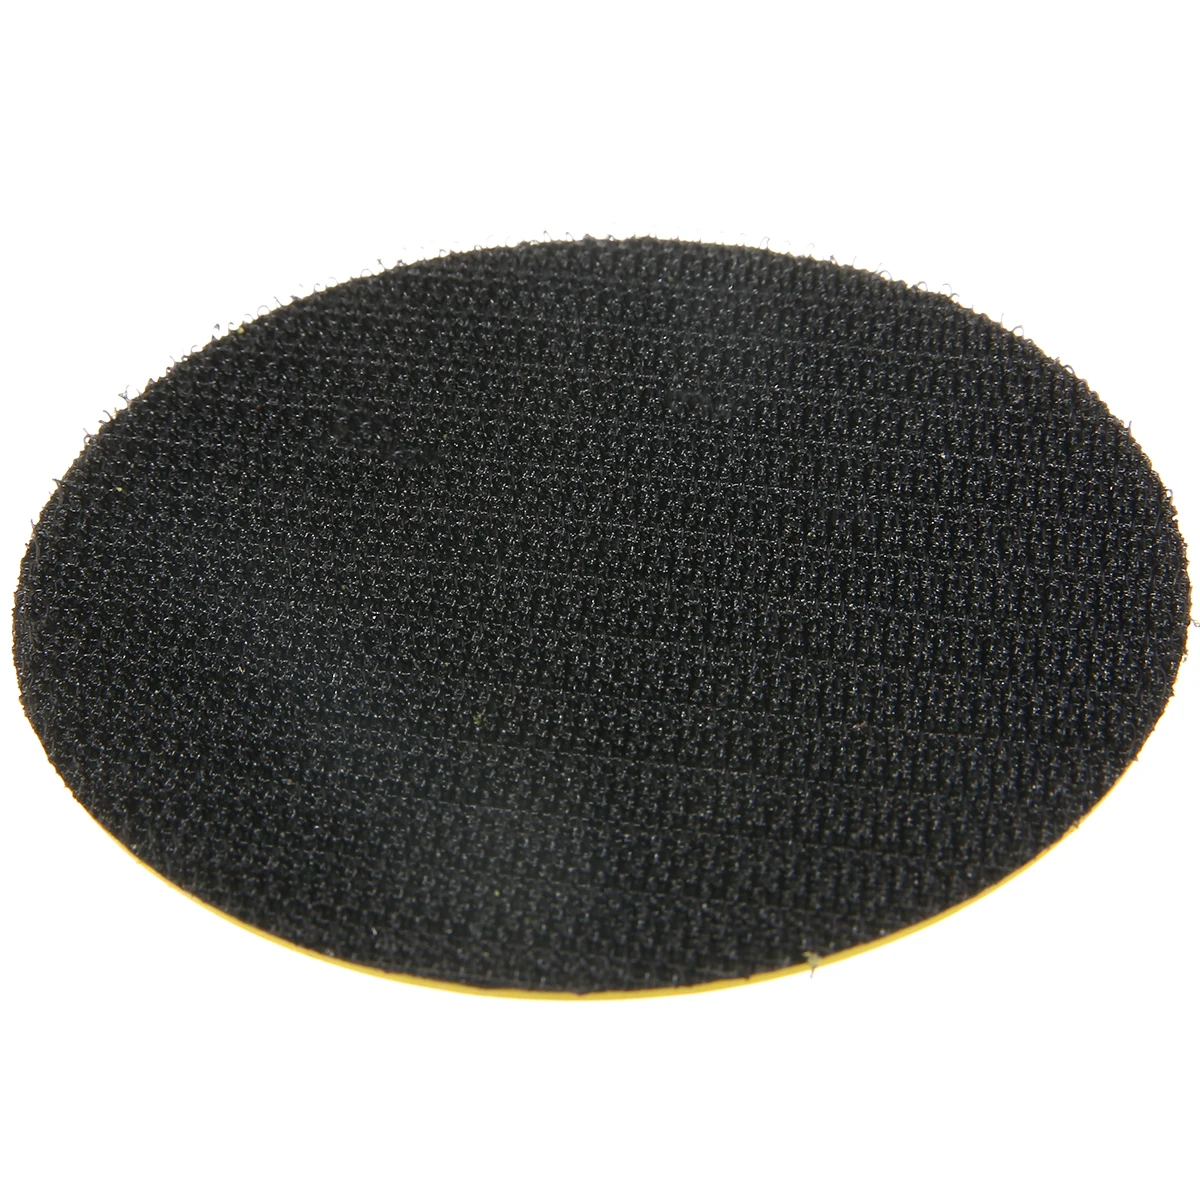 75 мм шлифовальный диск шлифовальный полировальный коврик опорная пластина полировальный коврик с 6 мм хвостовиком электрический шлифовальный станок роторный инструмент